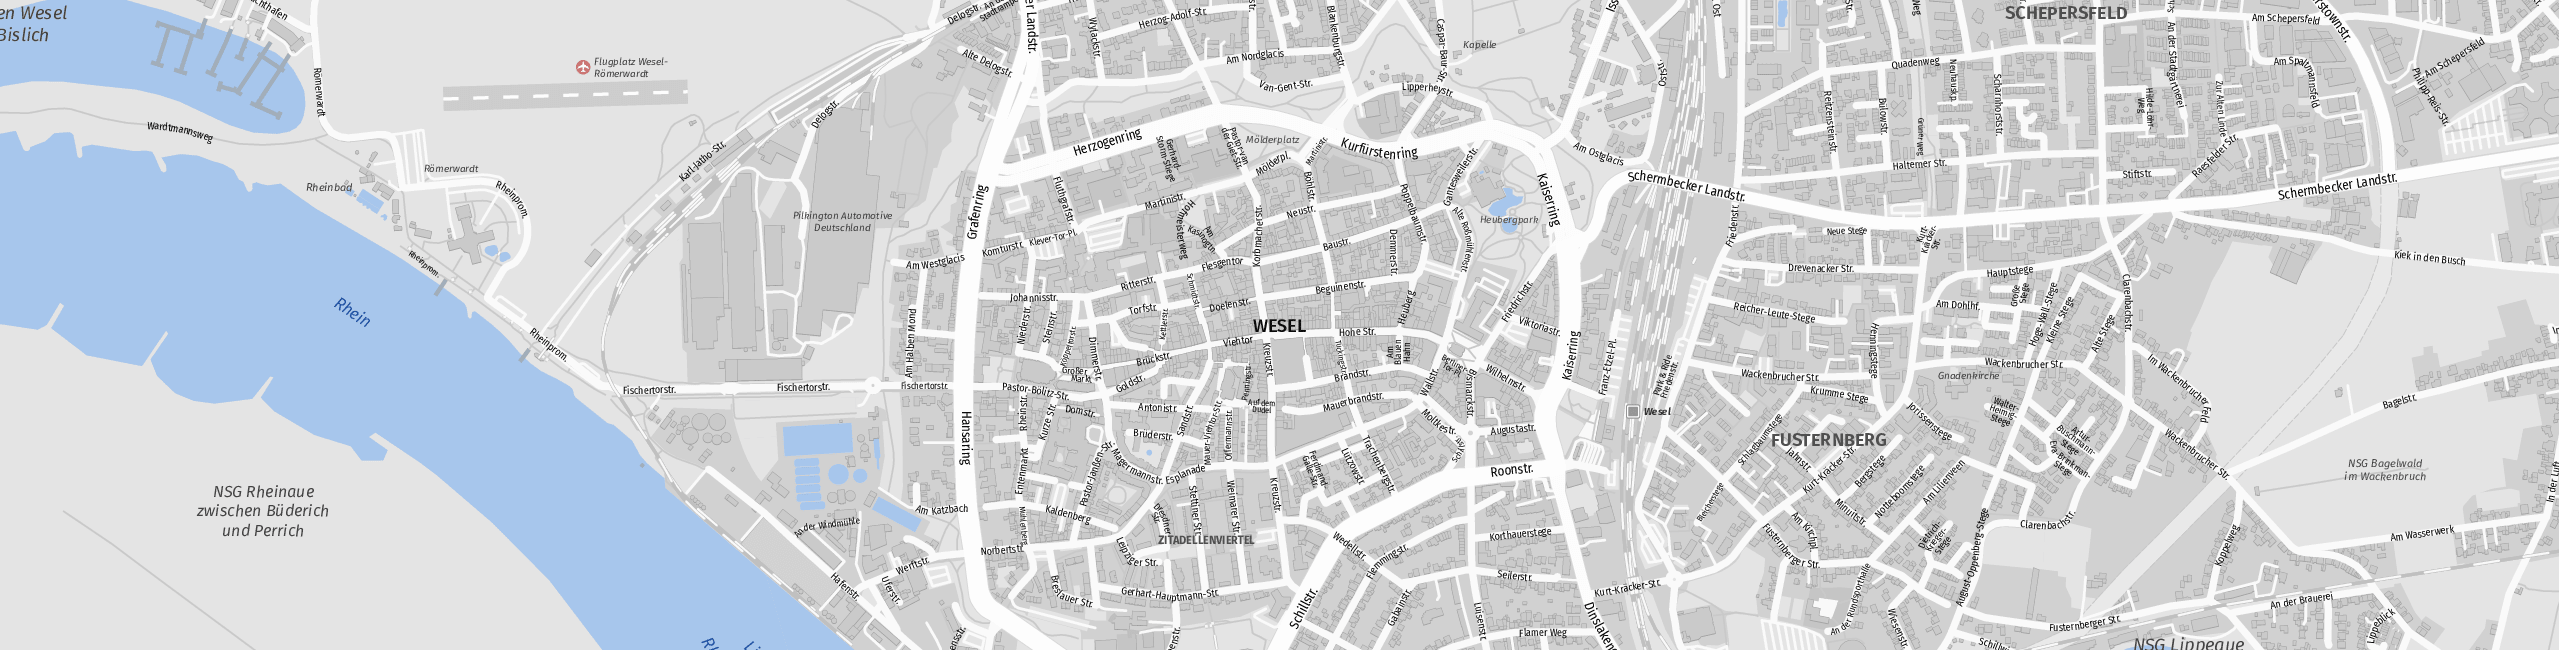 Stadtplan Wesel zum Downloaden.